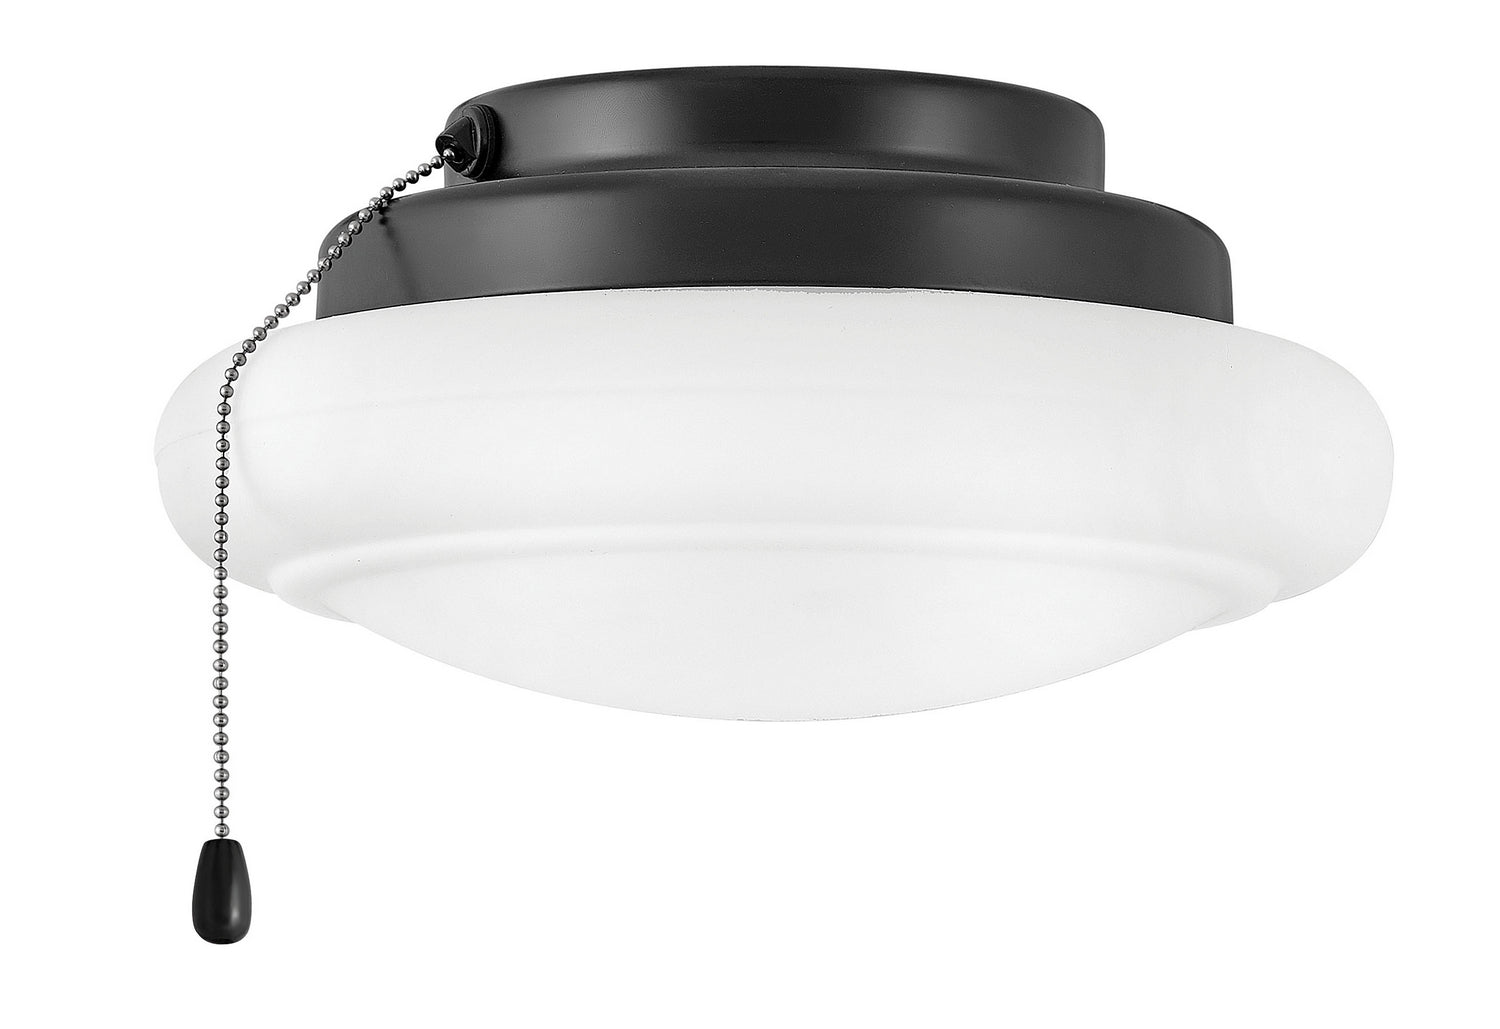 Hinkley - 930006FMB - LED Fan Light Kit - Light Kit - Matte Black